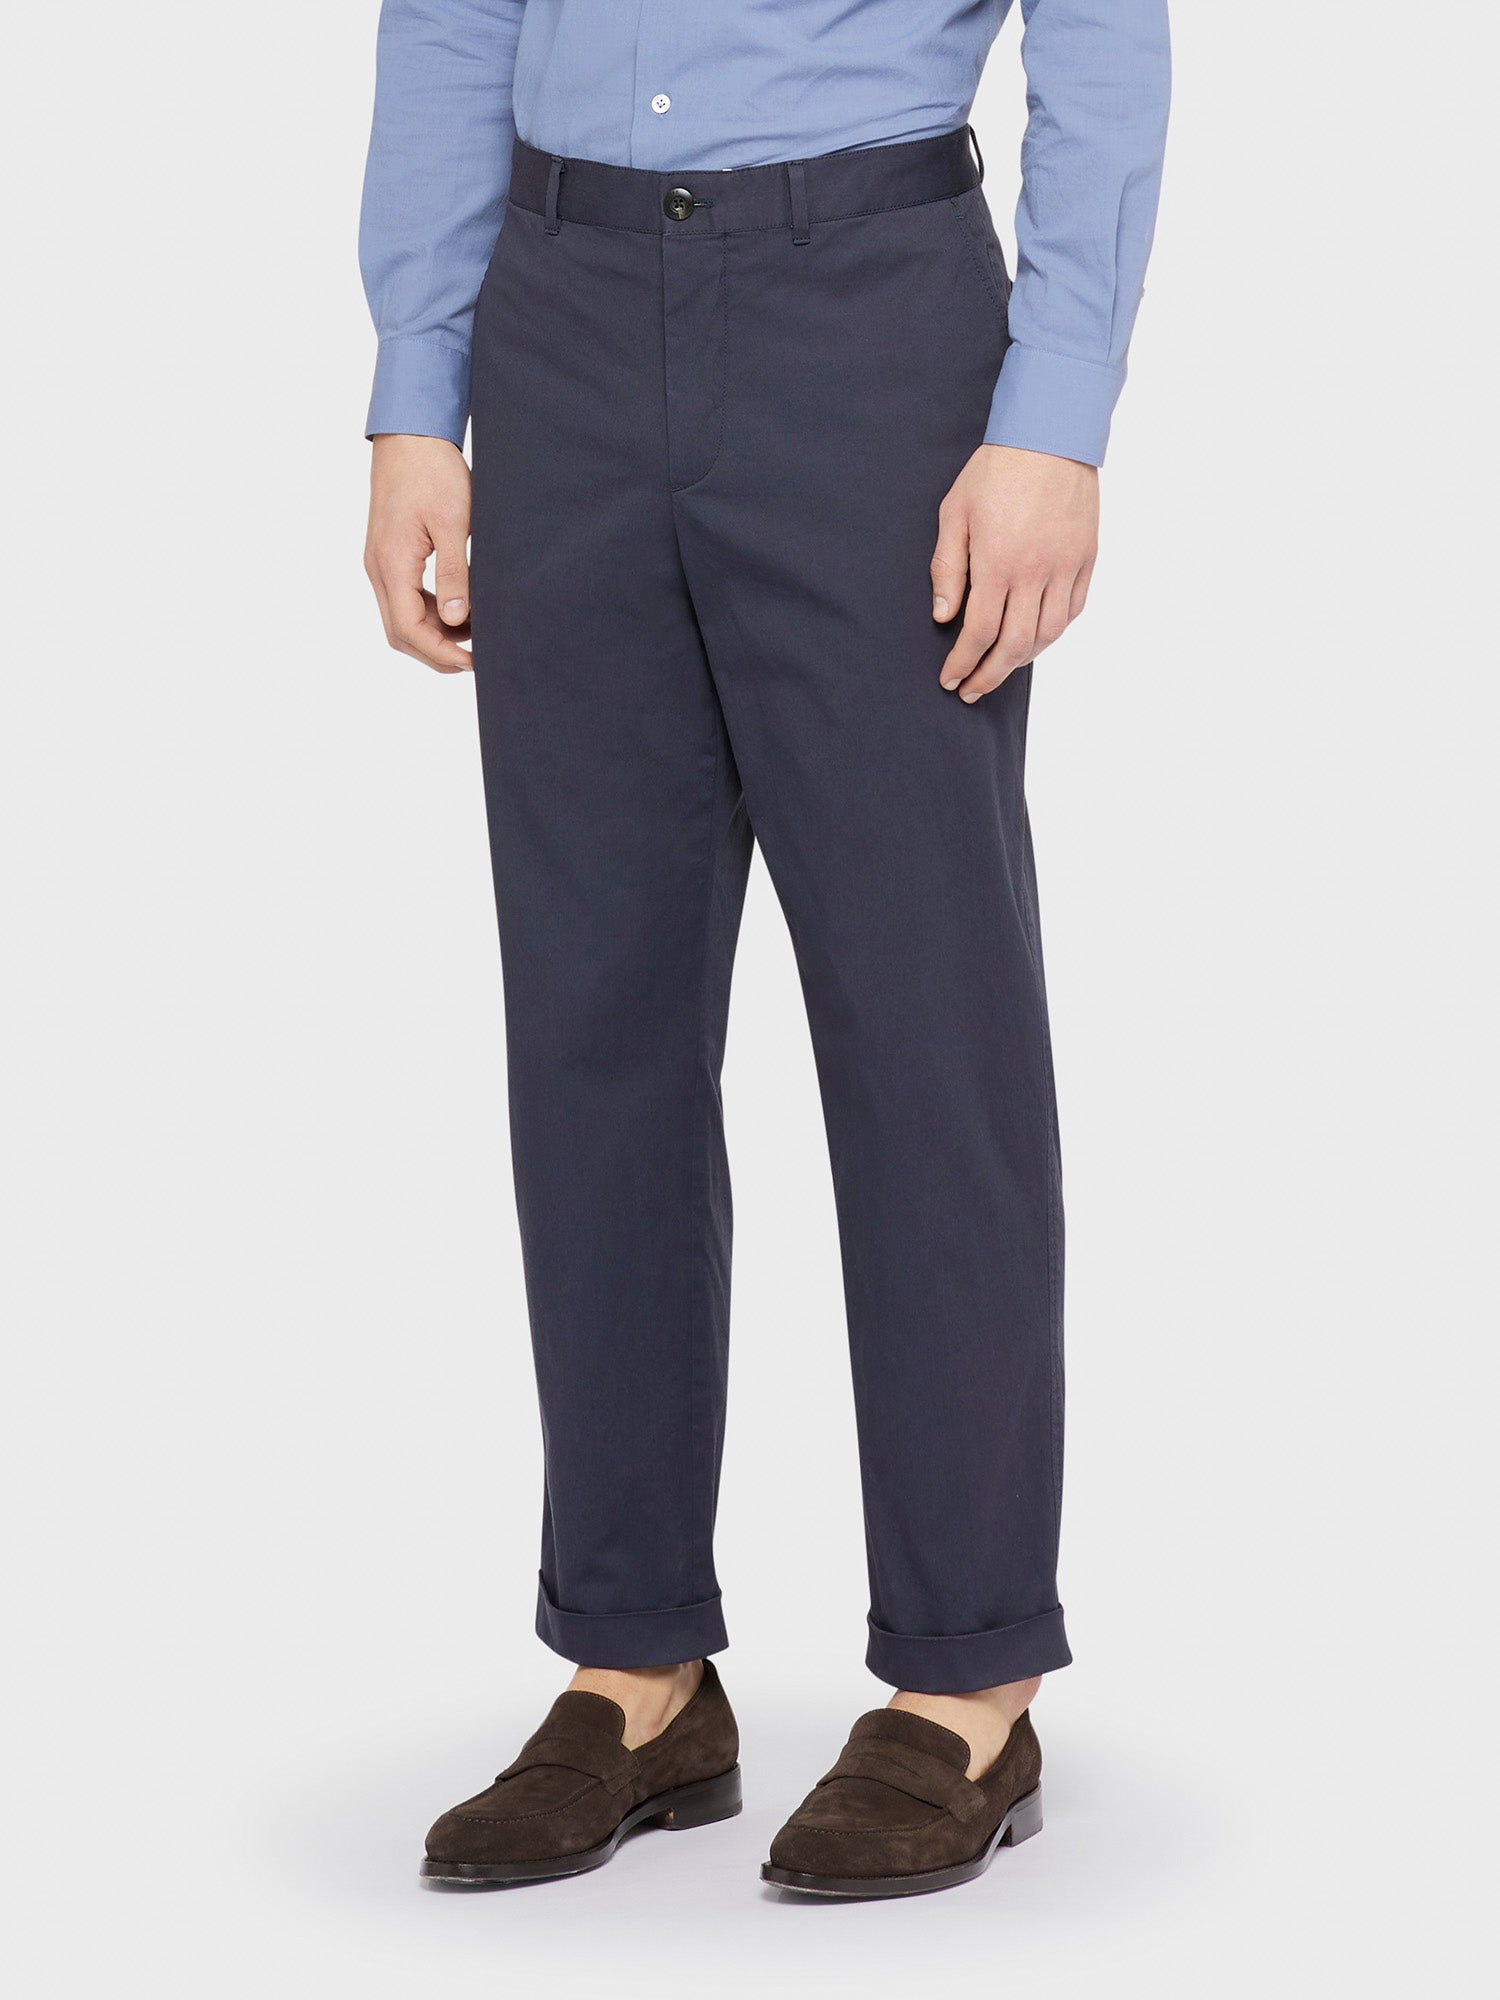 Caruso Menswear Abbigliamento Uomo Pantaloni informale in cotone e elastane blu indossati